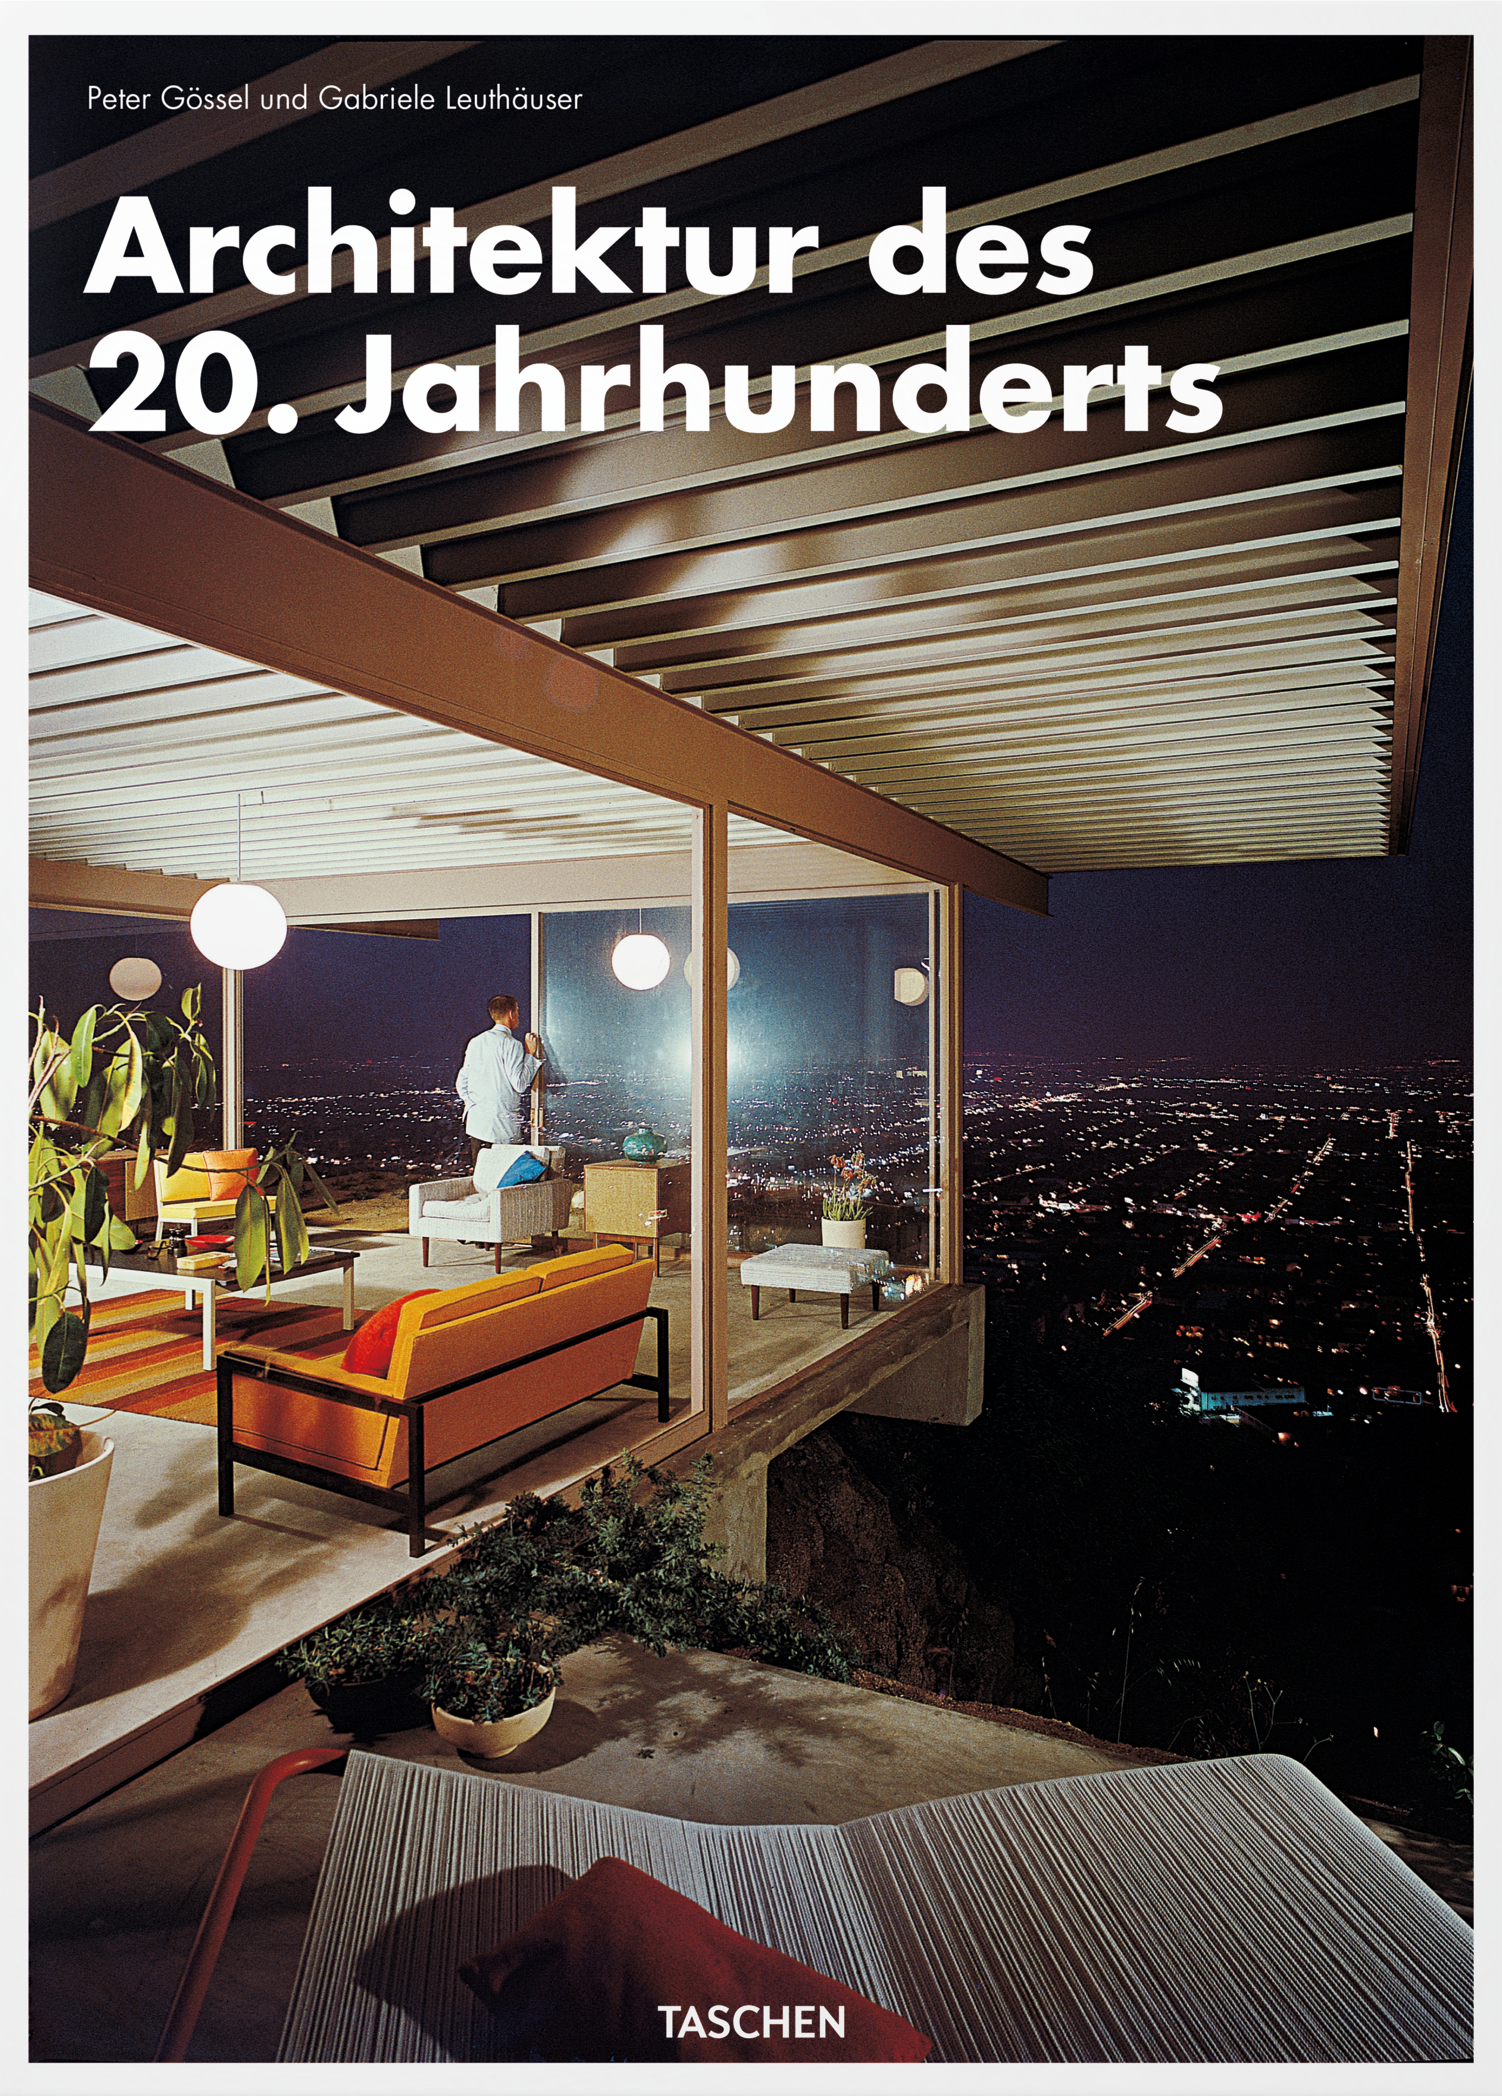 Buchcover: Peter Gössel/Gabriele Leuthäuser: Architektur des 20. Jahrhunderts 